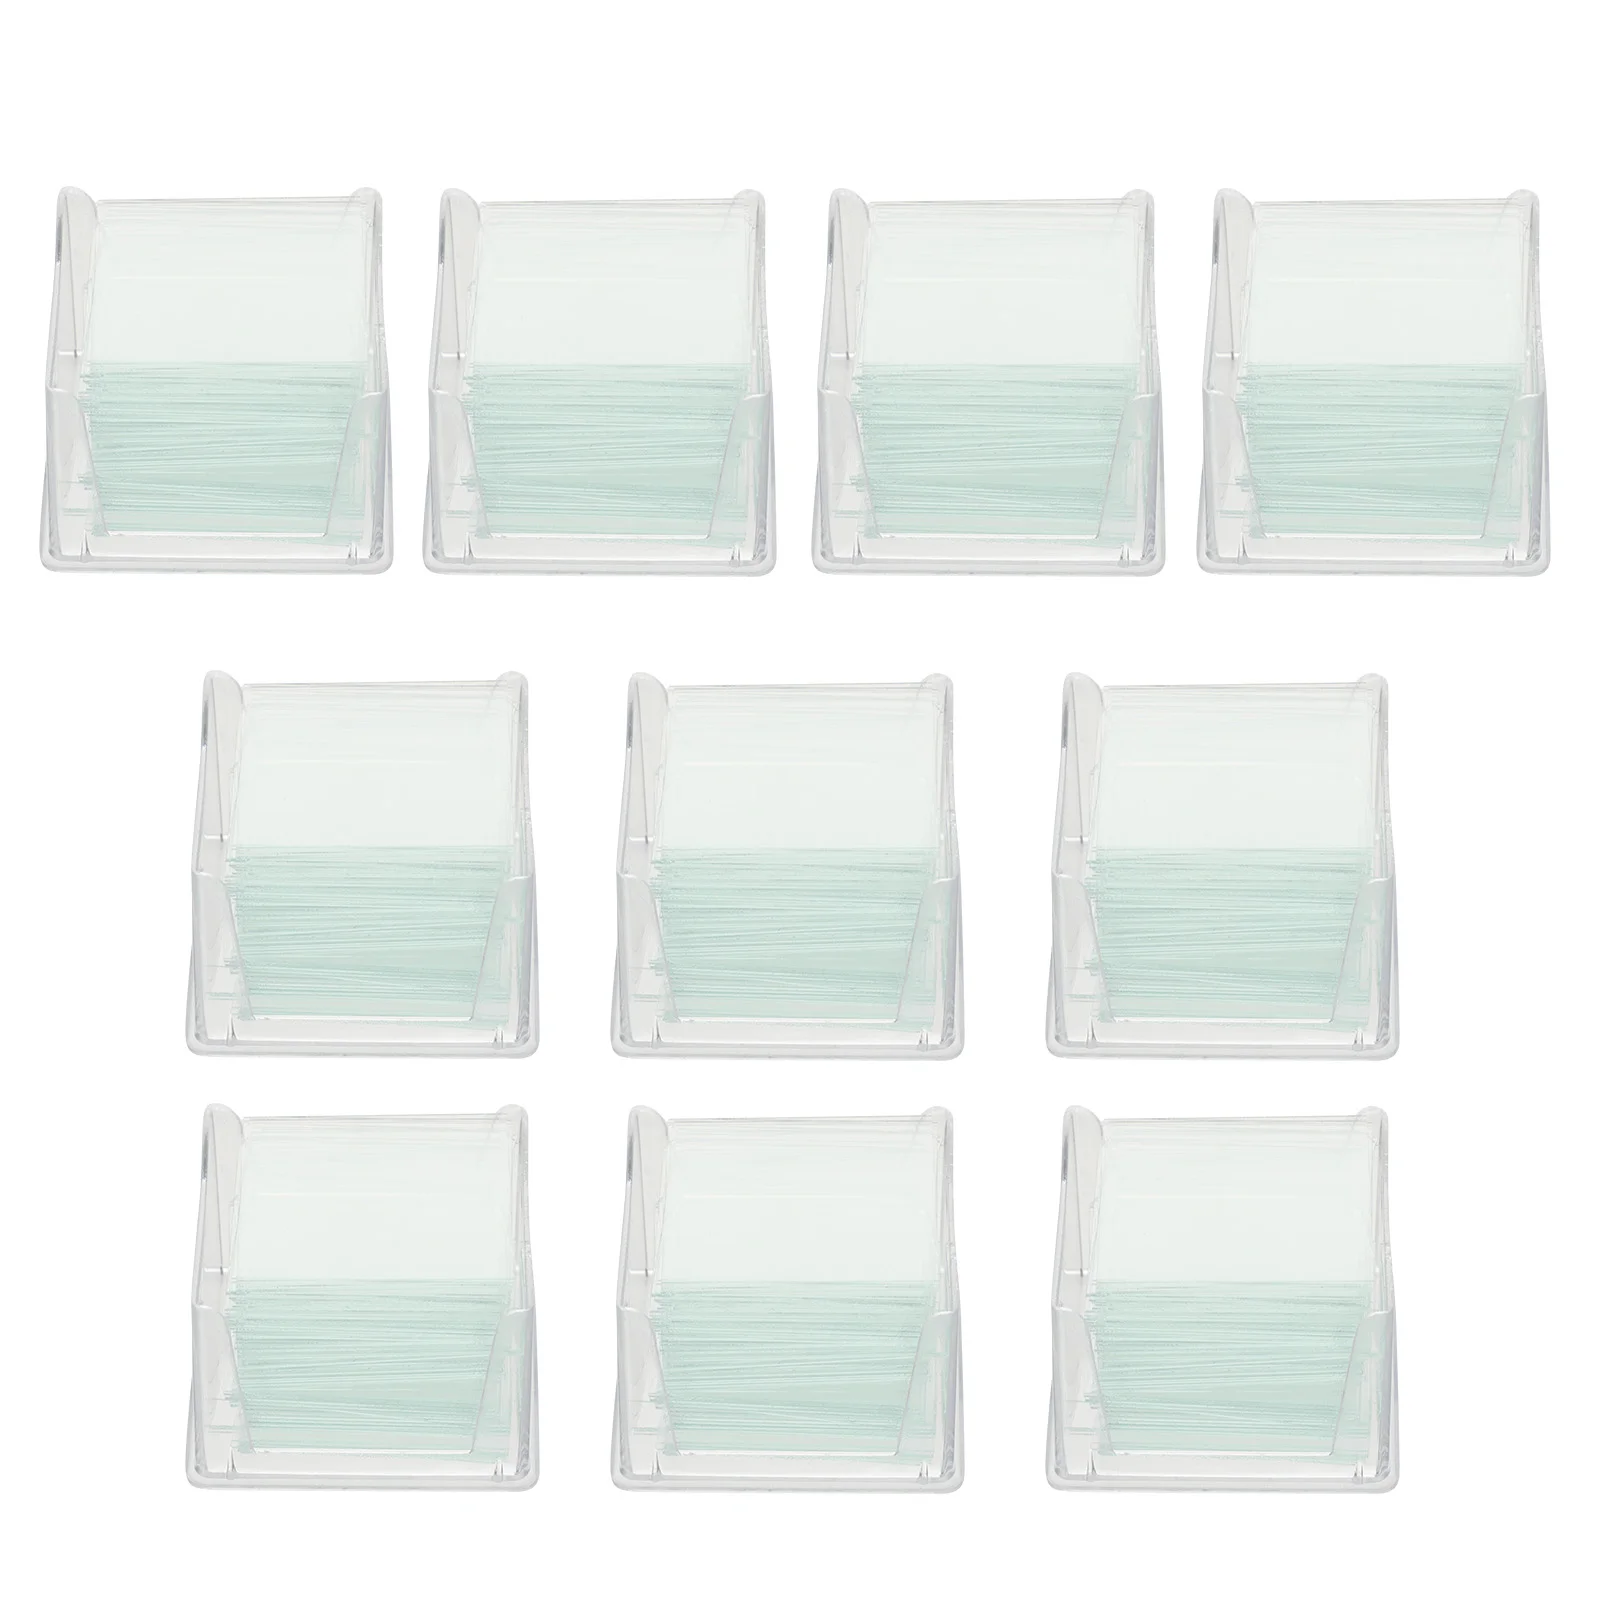 1000 / 10 Коробок подготовленных предметных стекол для микроскопа для базового образования в области биологических наук Квадратные покровные листы из прозрачного стекла